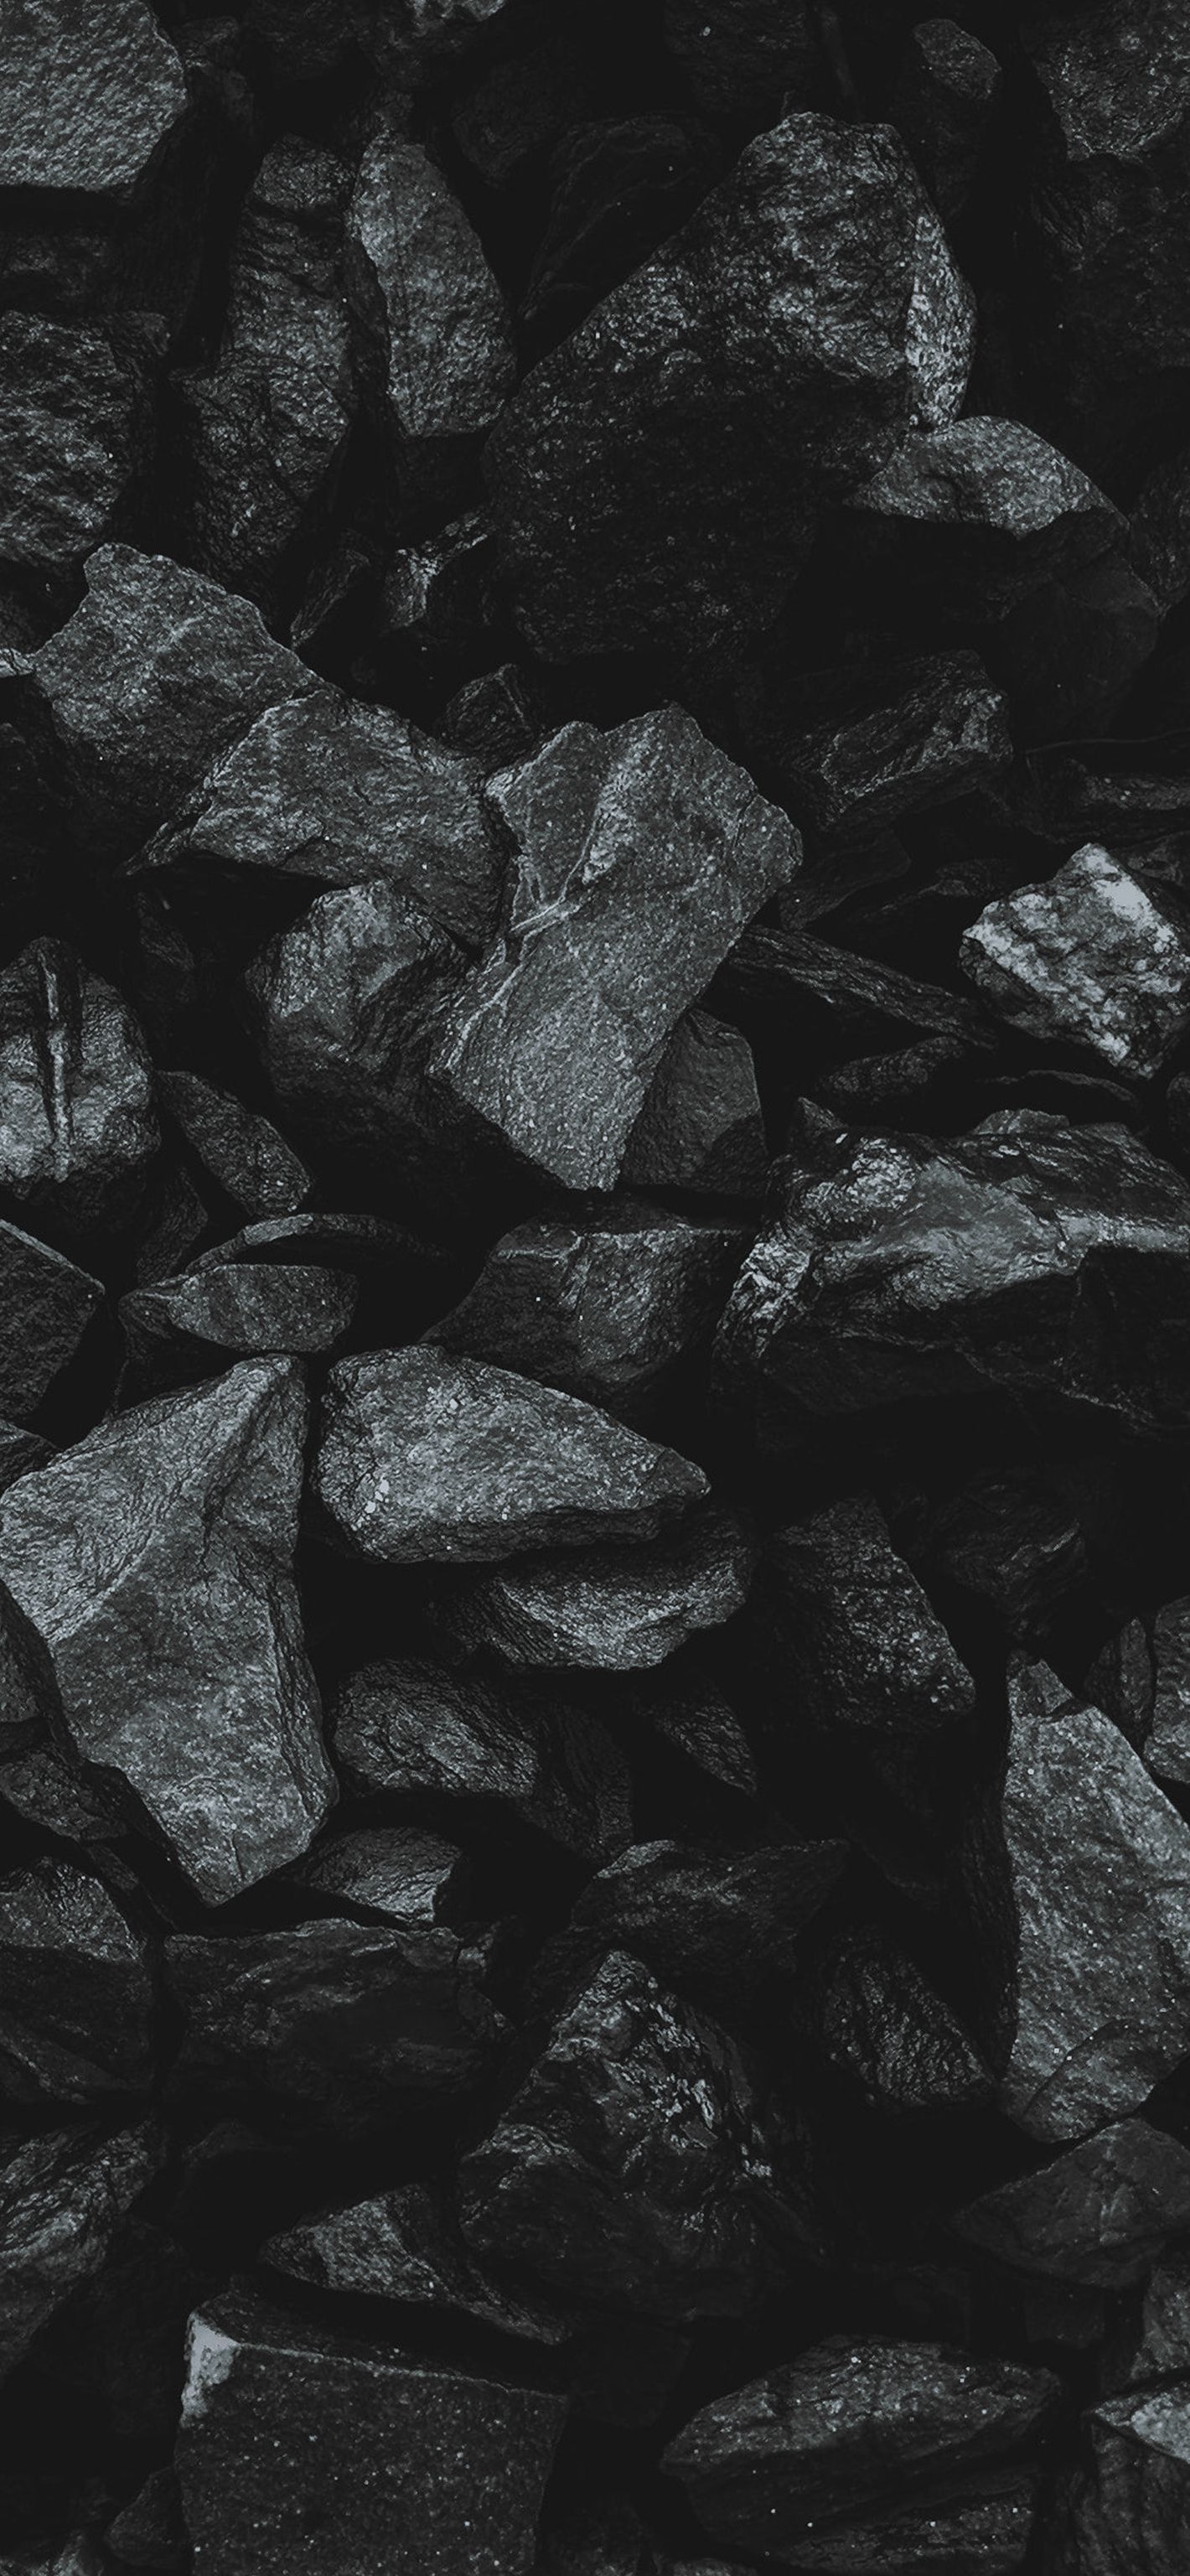  Schwarze Hintergrundbild 1420x3073. Kostenlose Hintergrundbilder Schwarz Und Weiß, Monochrom, Schwarz, Naturmaterialien, Kohle, Bilder Für Ihren Desktop Und Fotos